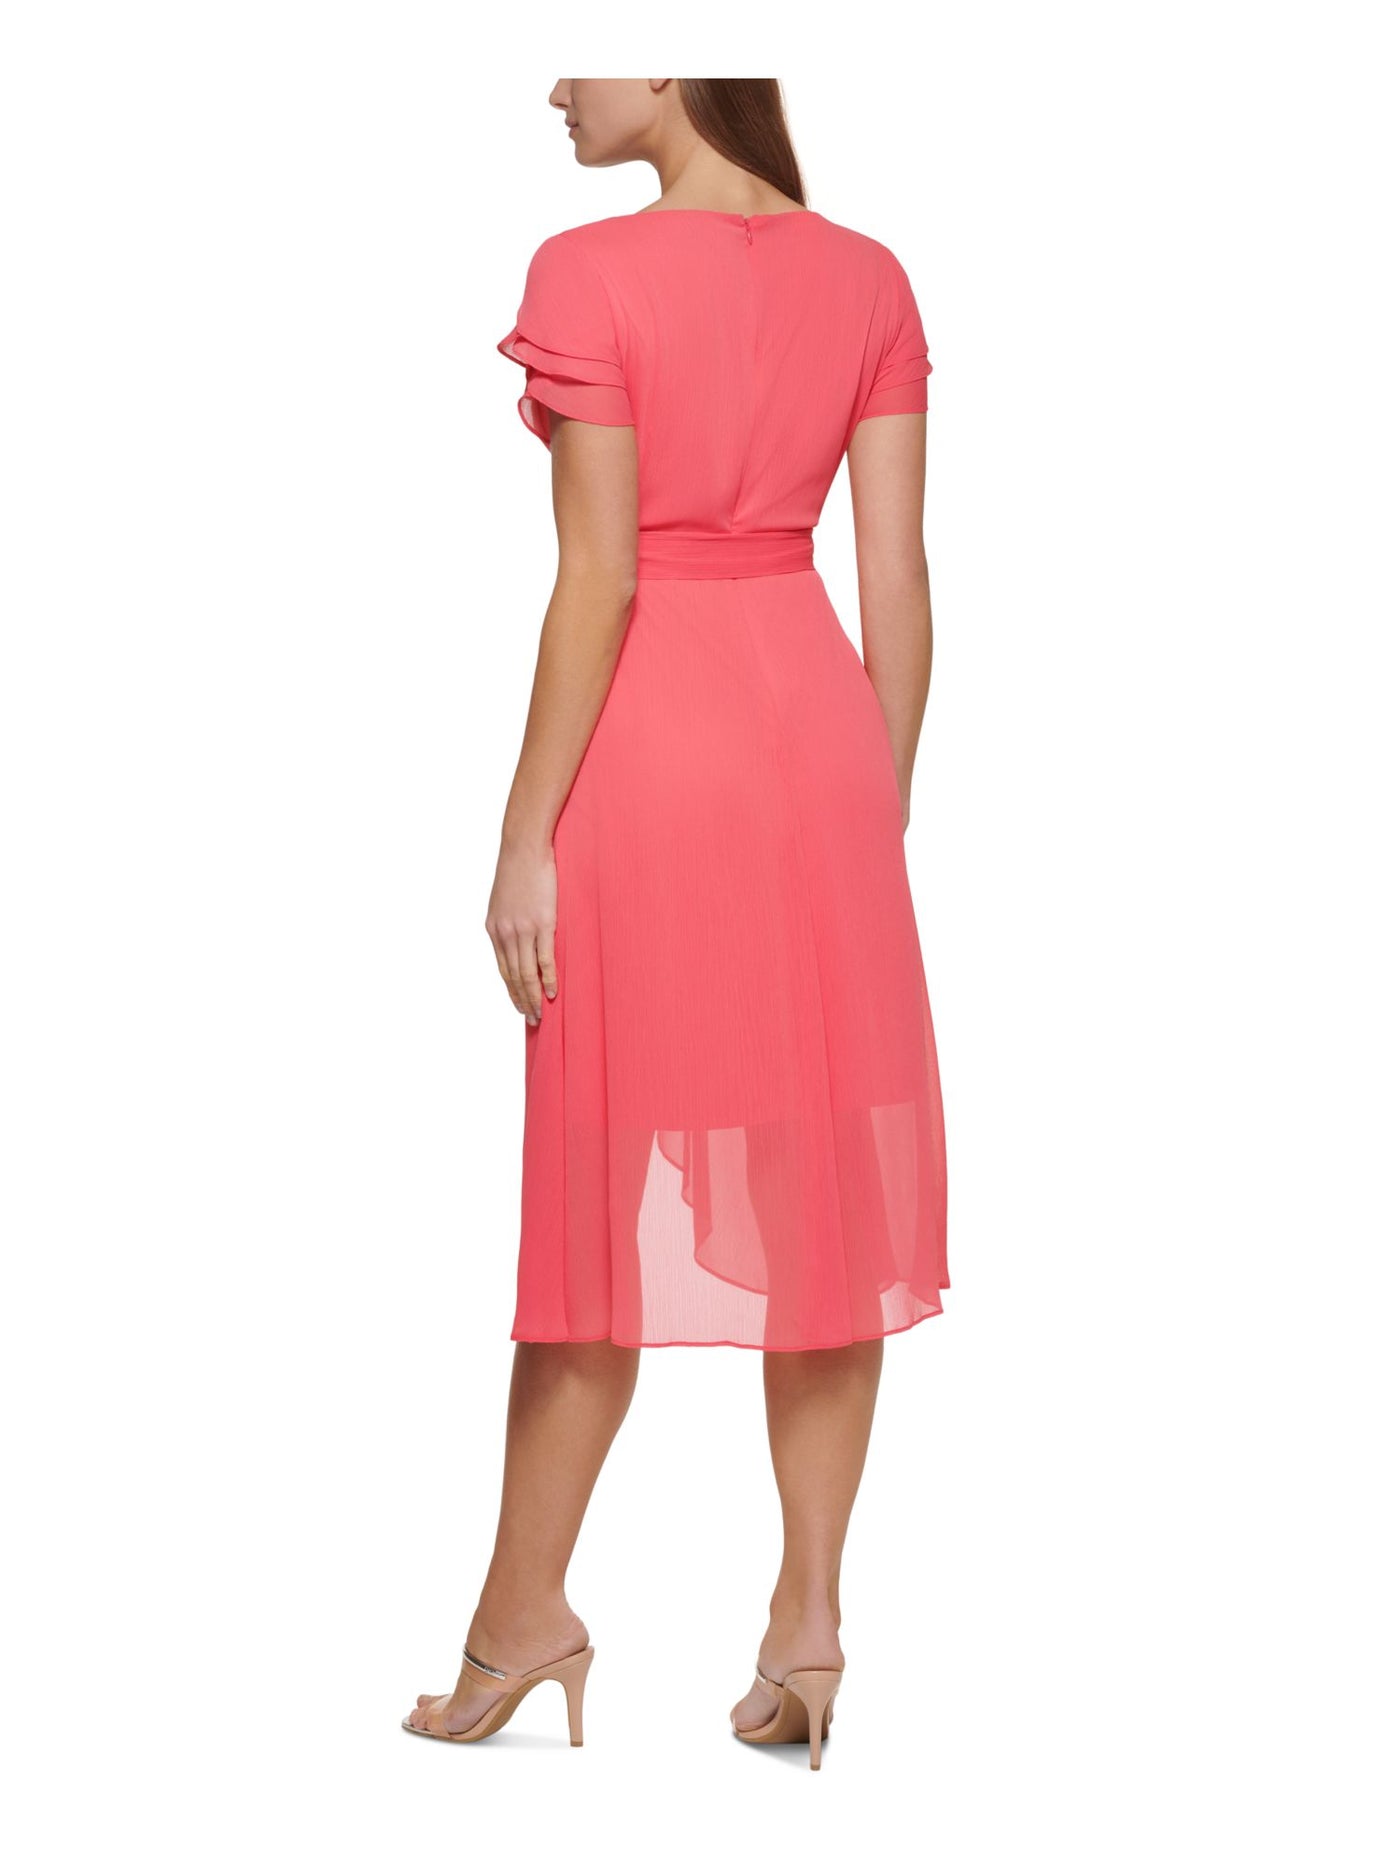 DKNY Womens Pink Zippered Lined Tiered Short Sleeves Tie-belt Surplice Neckline Below The Knee Wear To Work Faux Wrap Dress 2